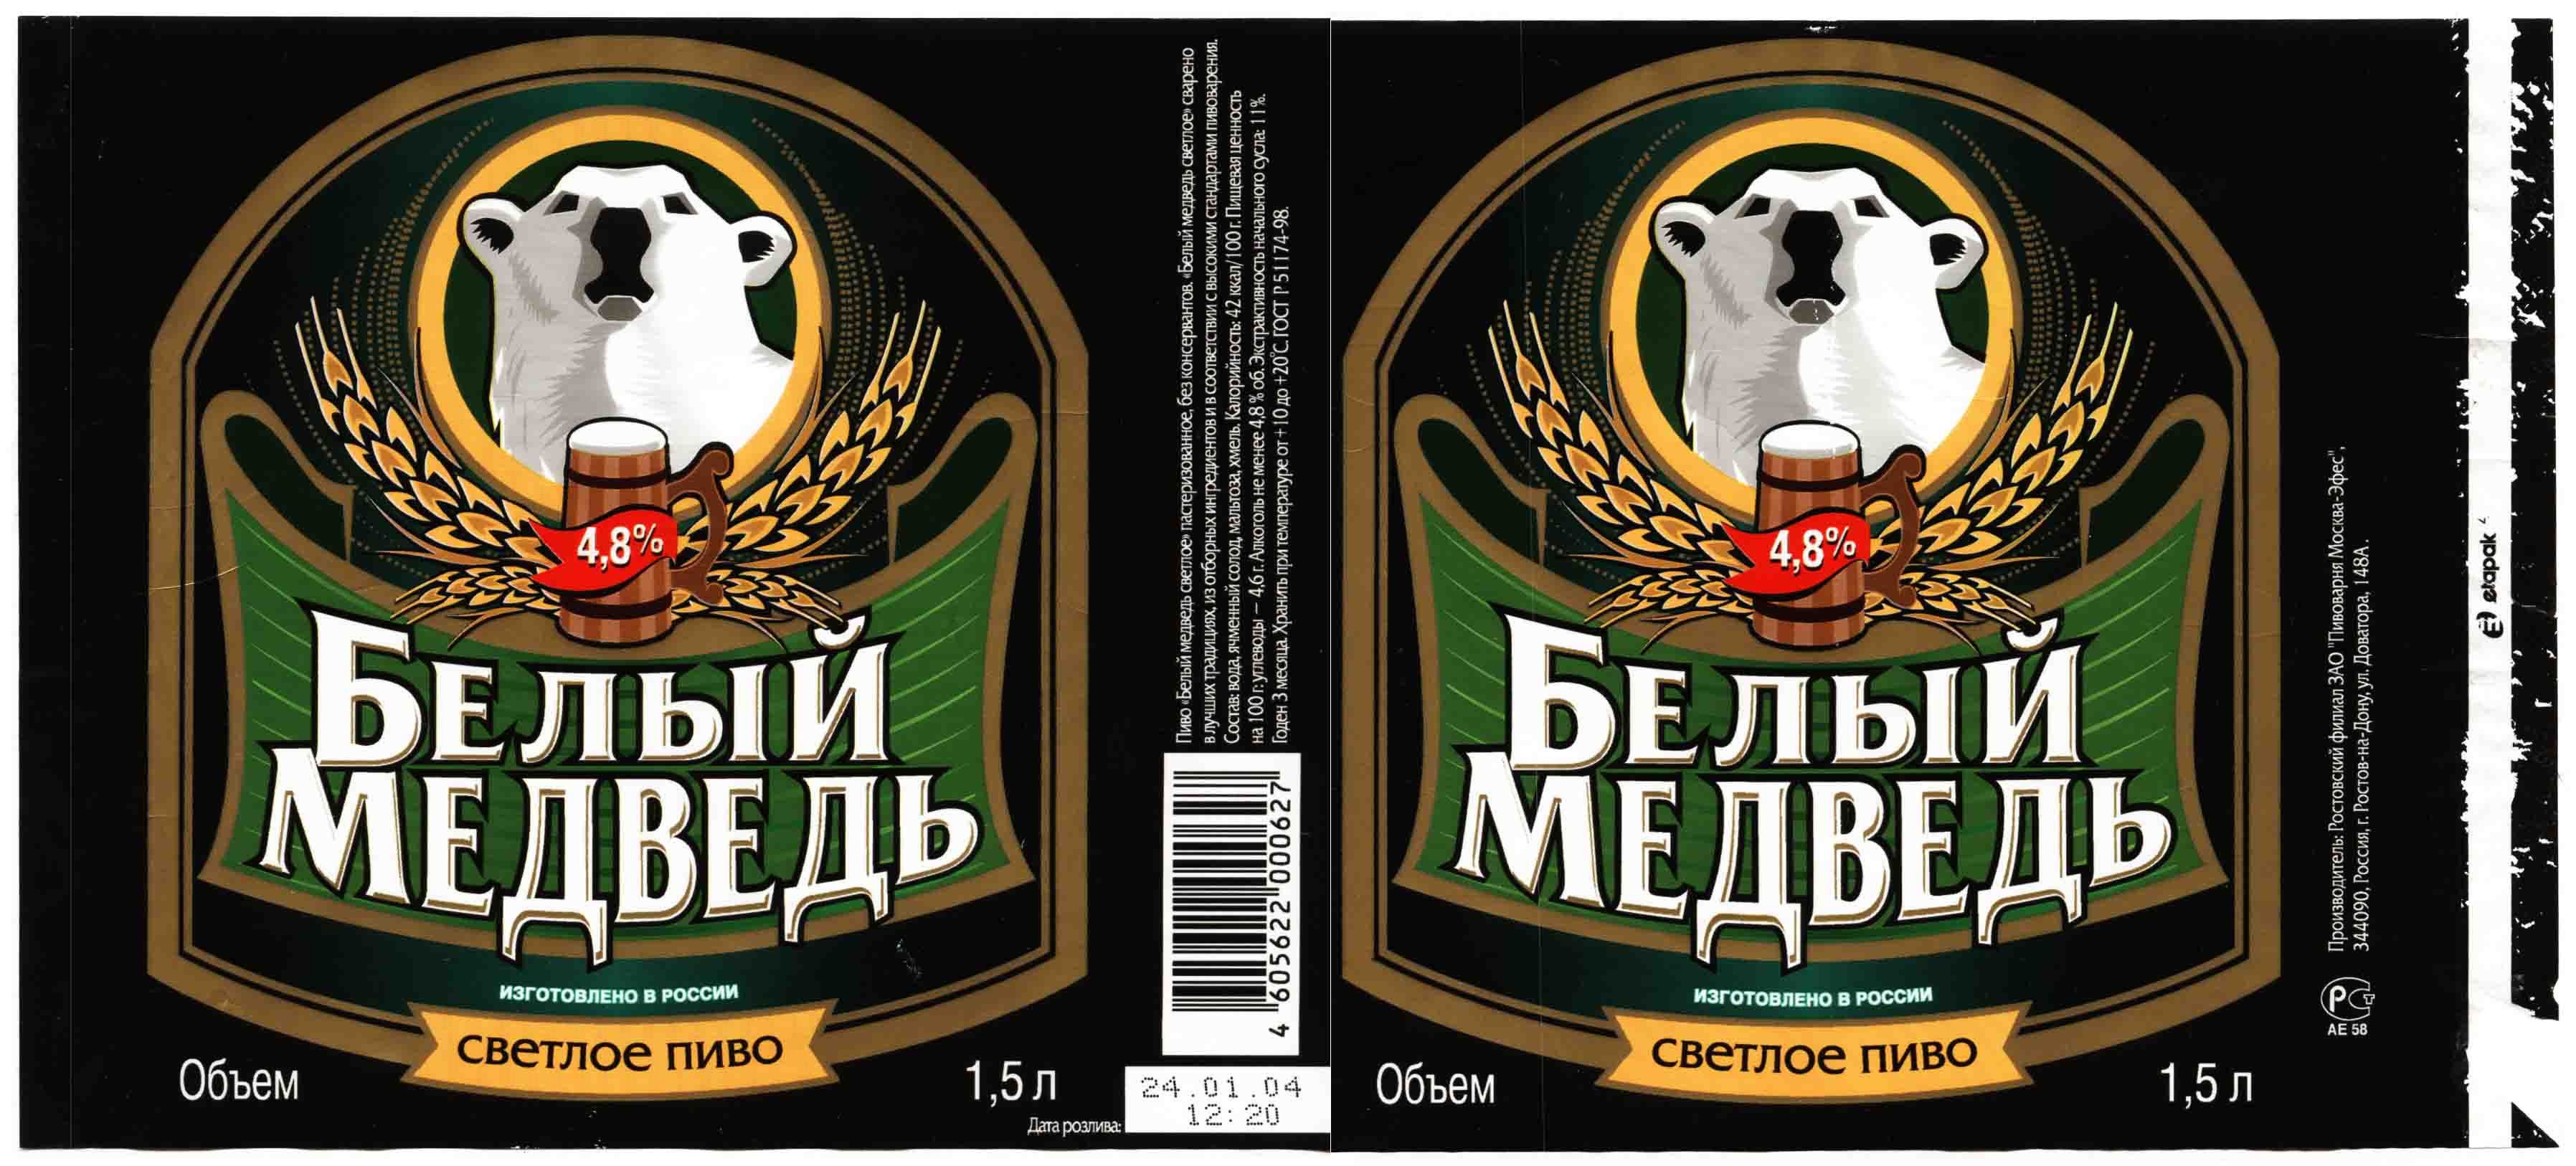 Efes ukraine начинает производство пива «белый медведь»